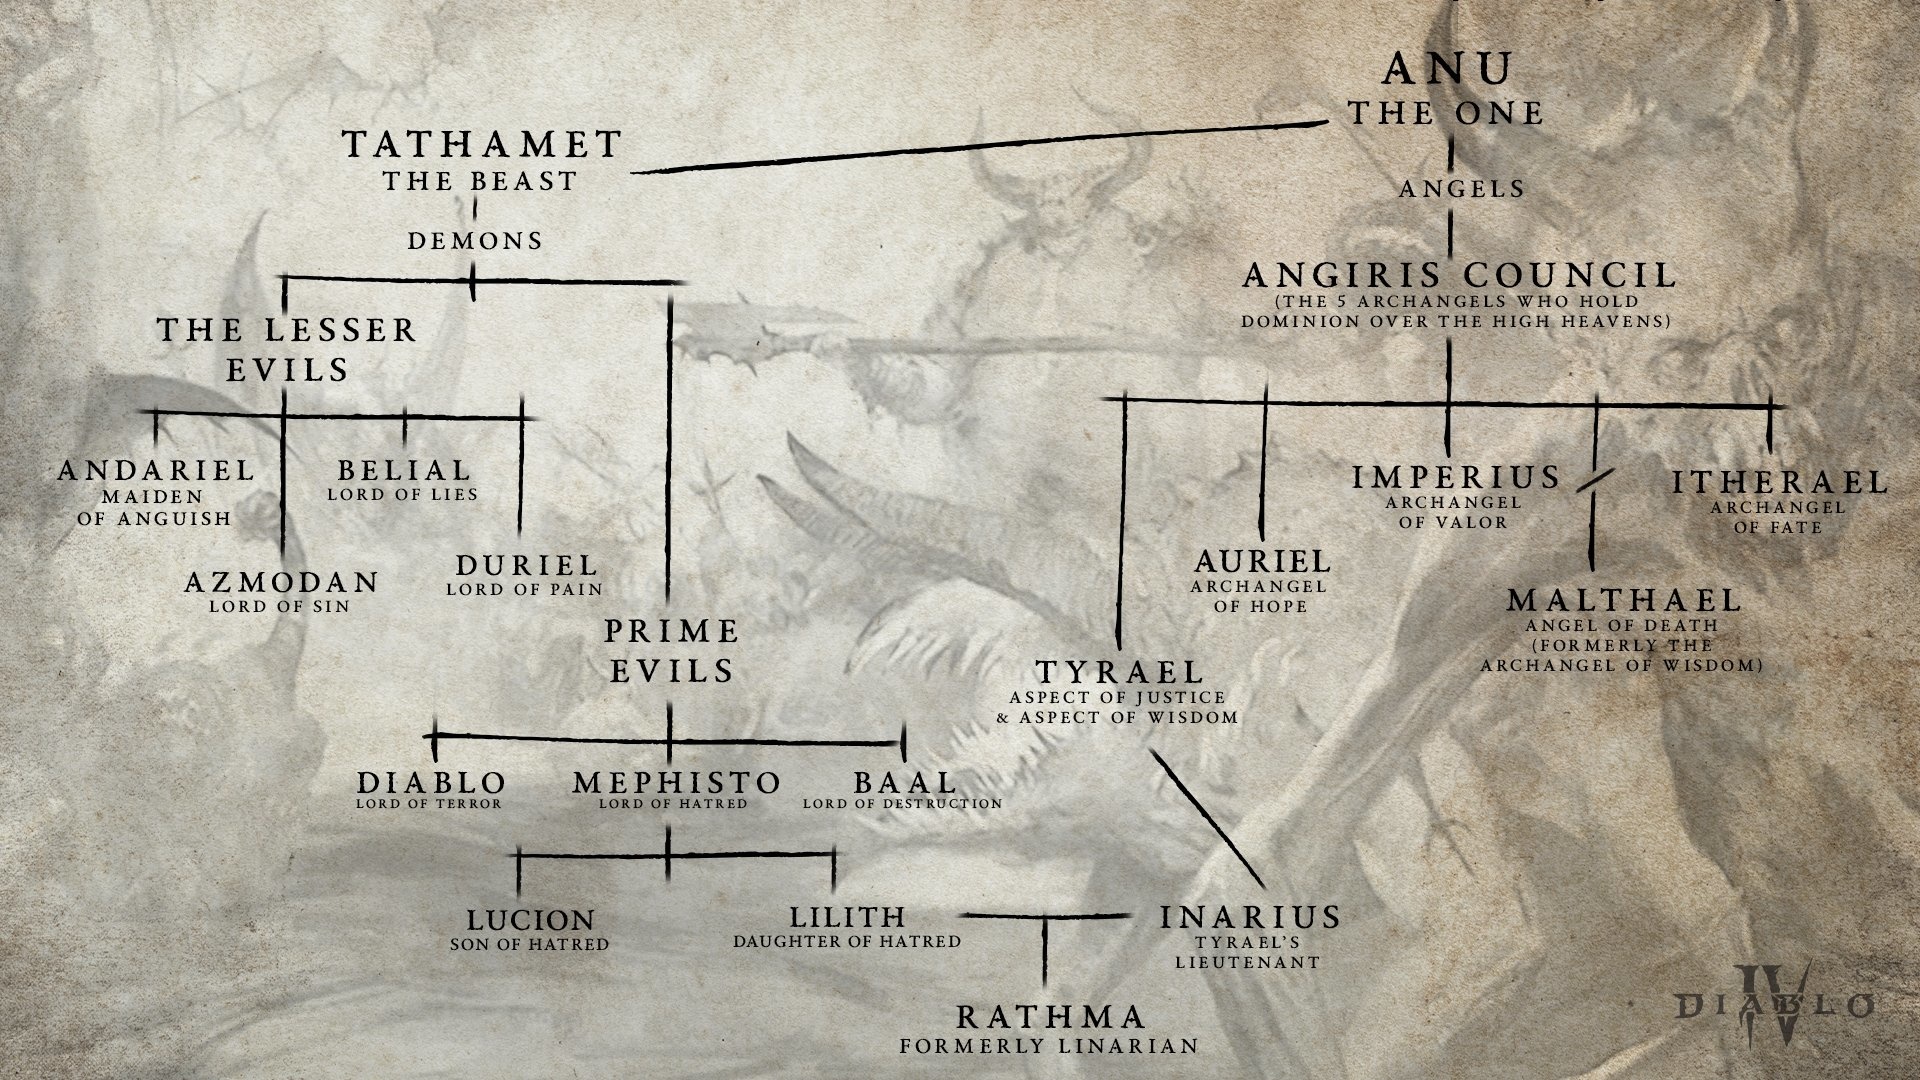 (最初のアヌから始まり、リリスとイナリウスの息子までの天使と悪魔を示す家系図)